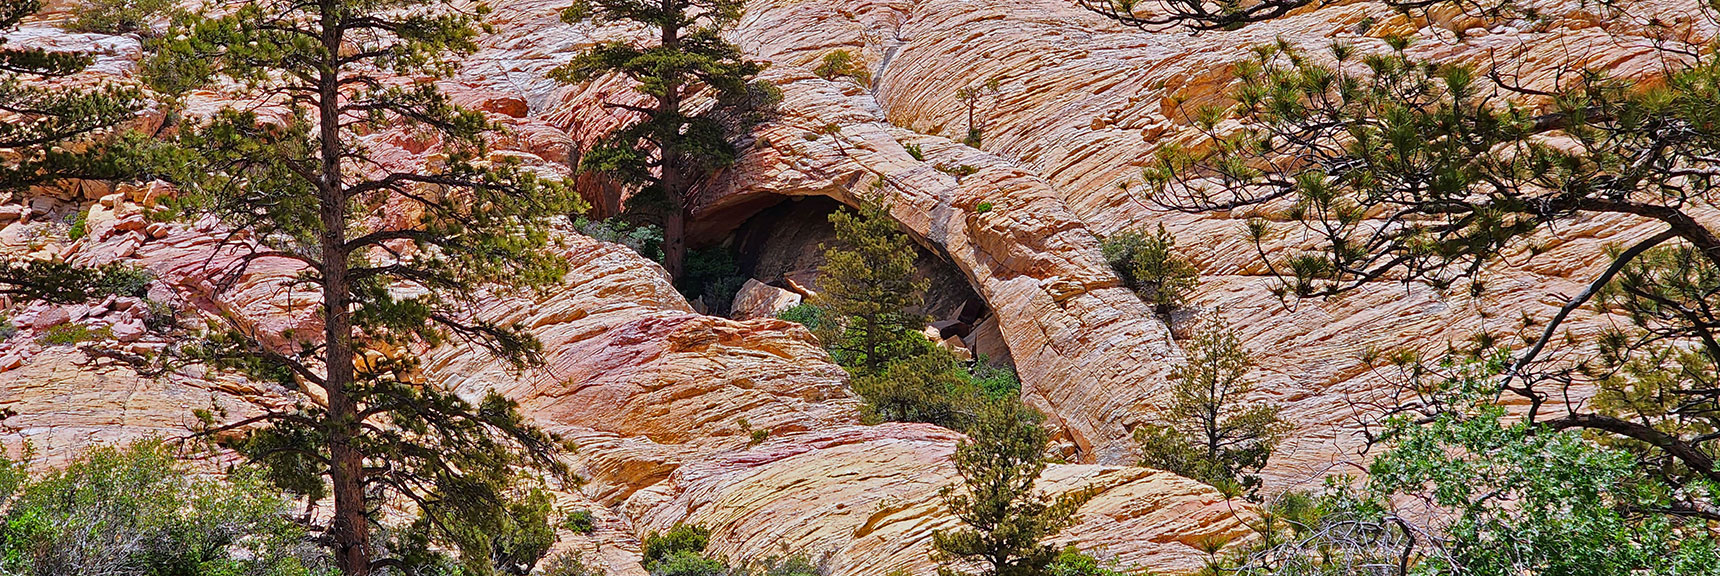 Little Zion Arch Formation | Little Zion | Rainbow Mountain Wilderness, Nevada